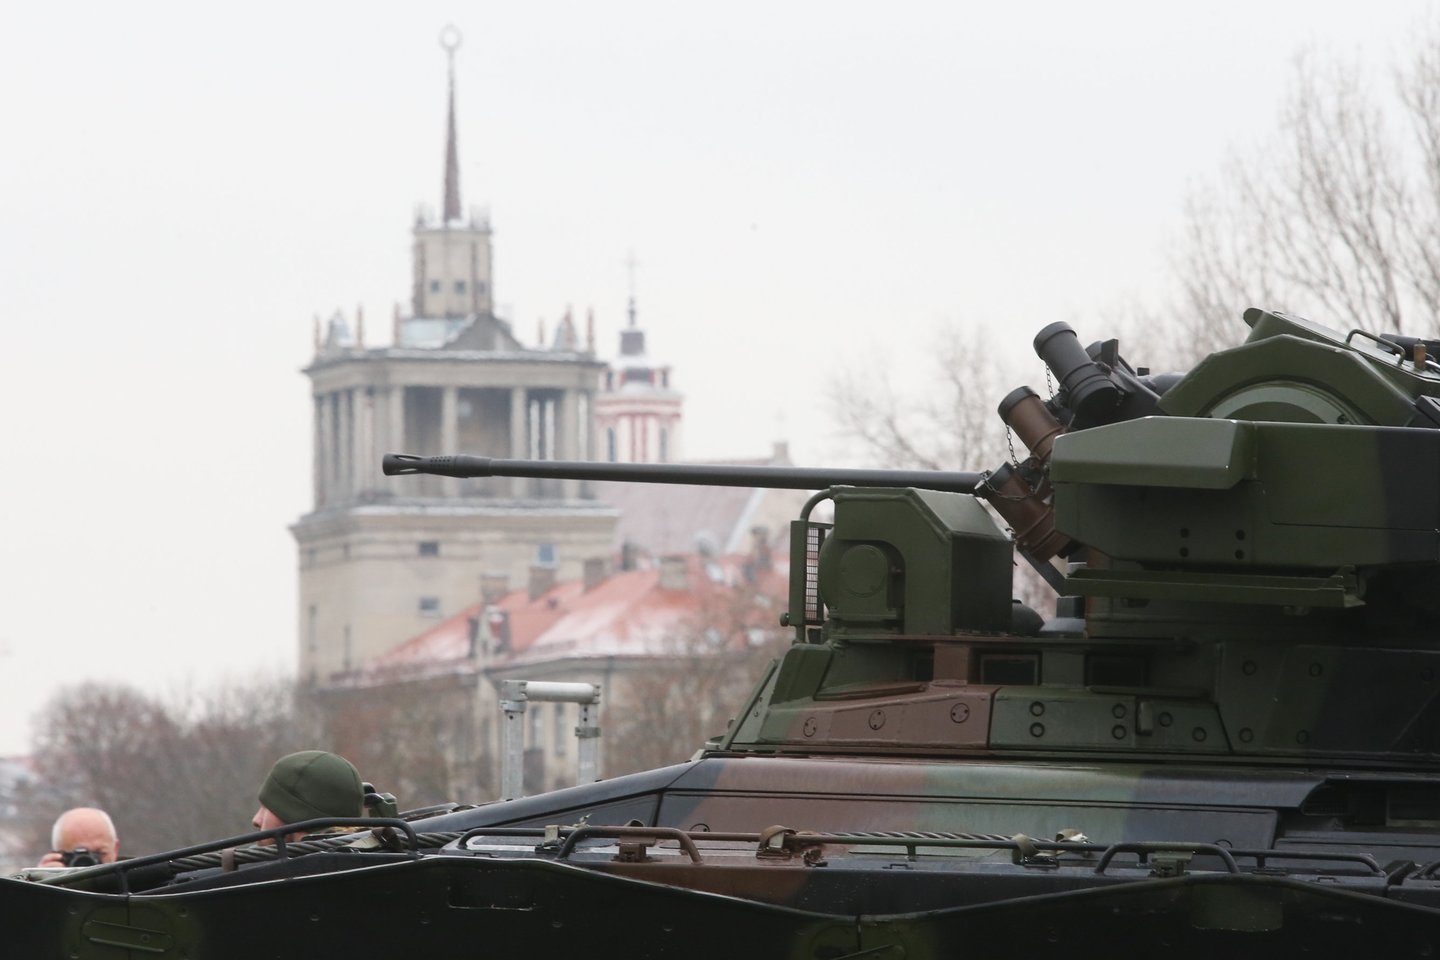  Lietuvos kariuomenės šimtmečio parade pasirodys daugiau nei 80 karinių mašinų.<br> R. Danisevičiaus nuotr.